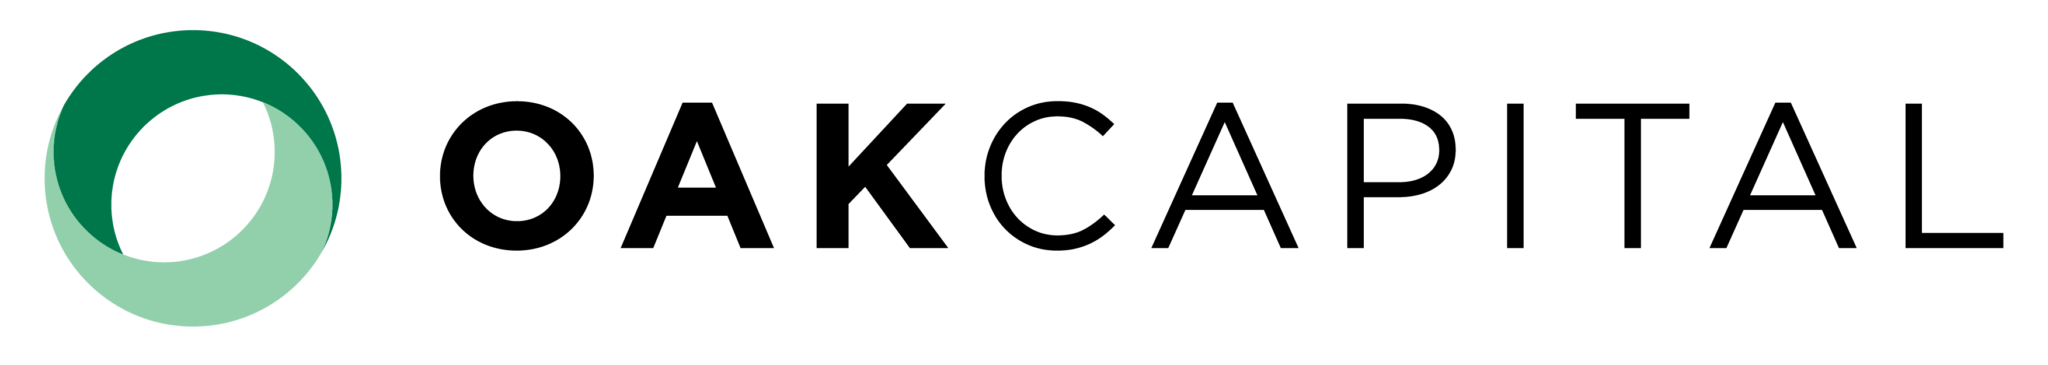 Oak Logo No Tagline-01